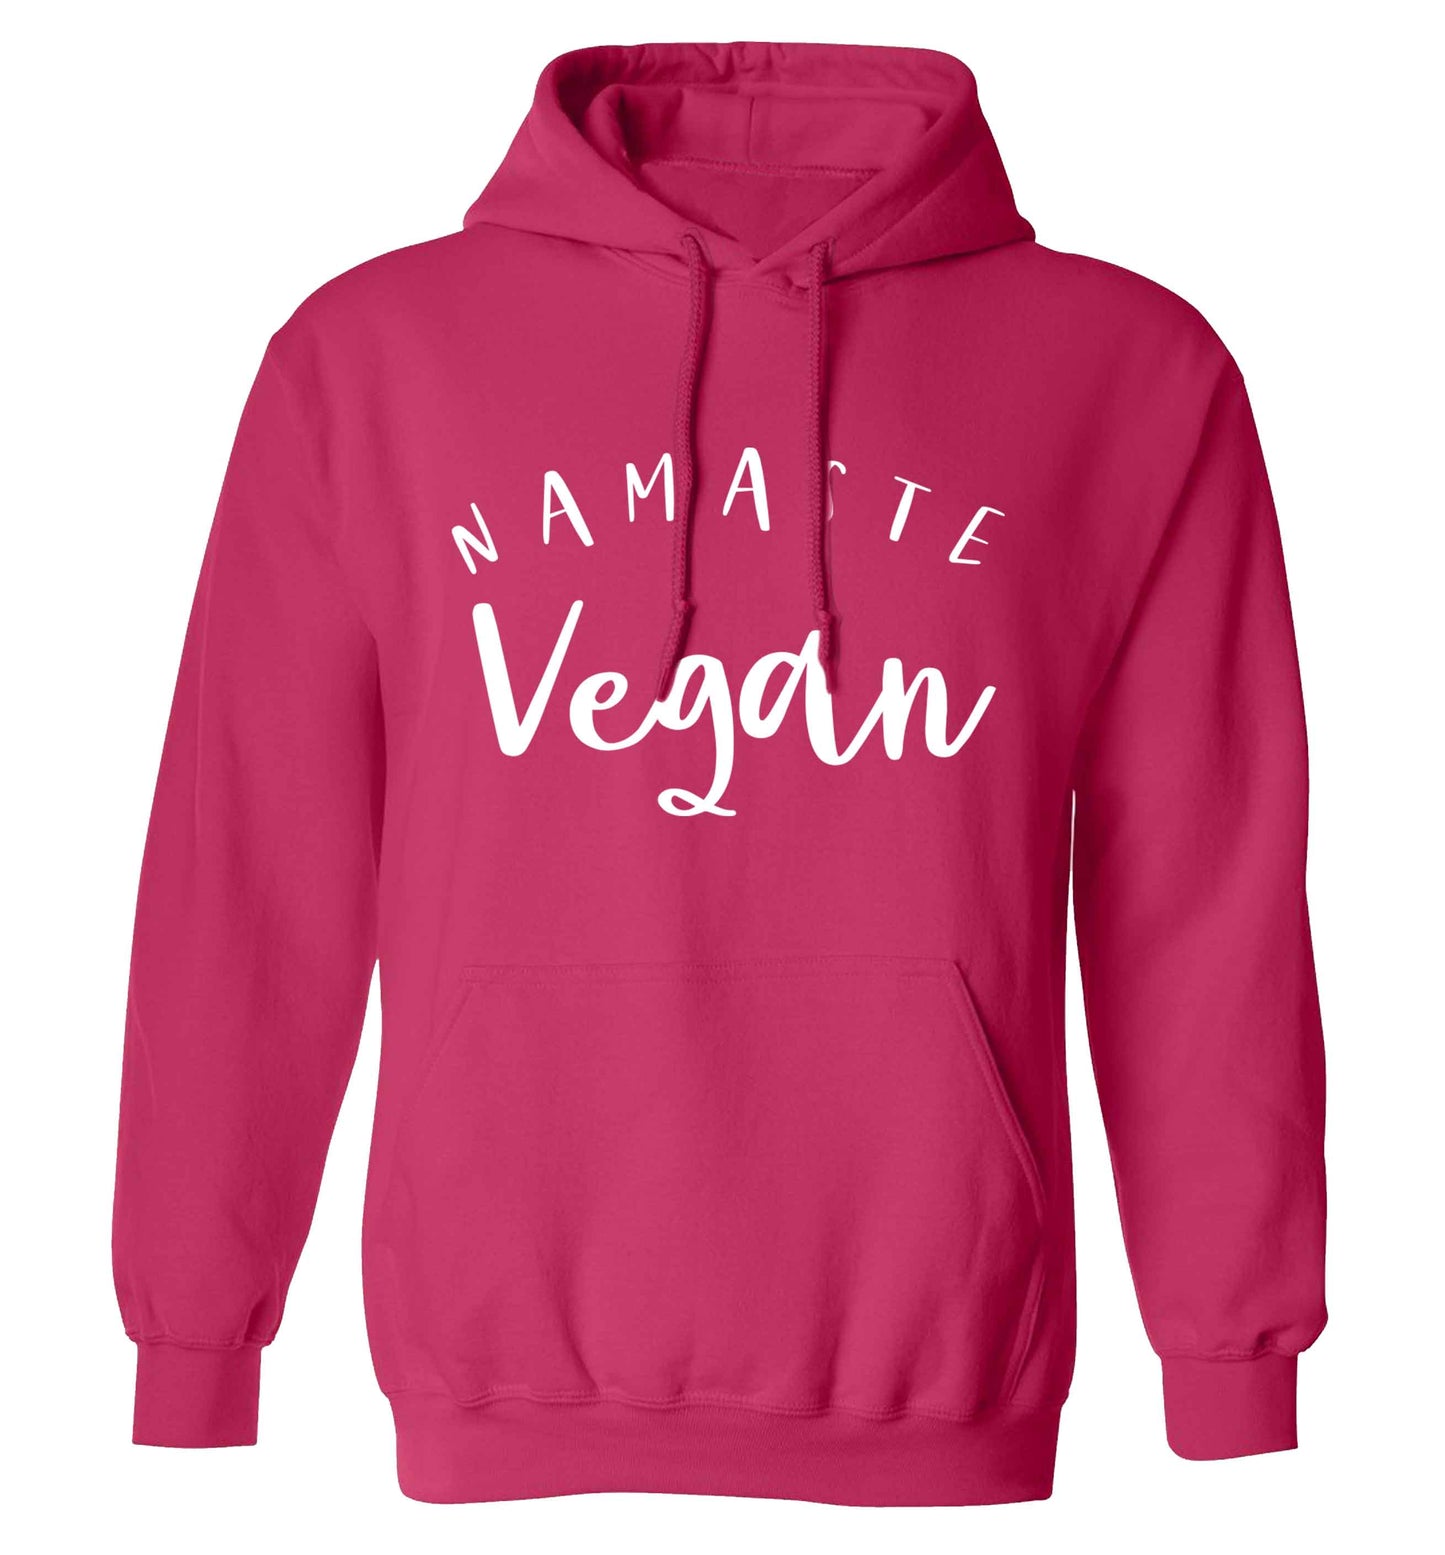 Namaste vegan adults unisex pink hoodie 2XL